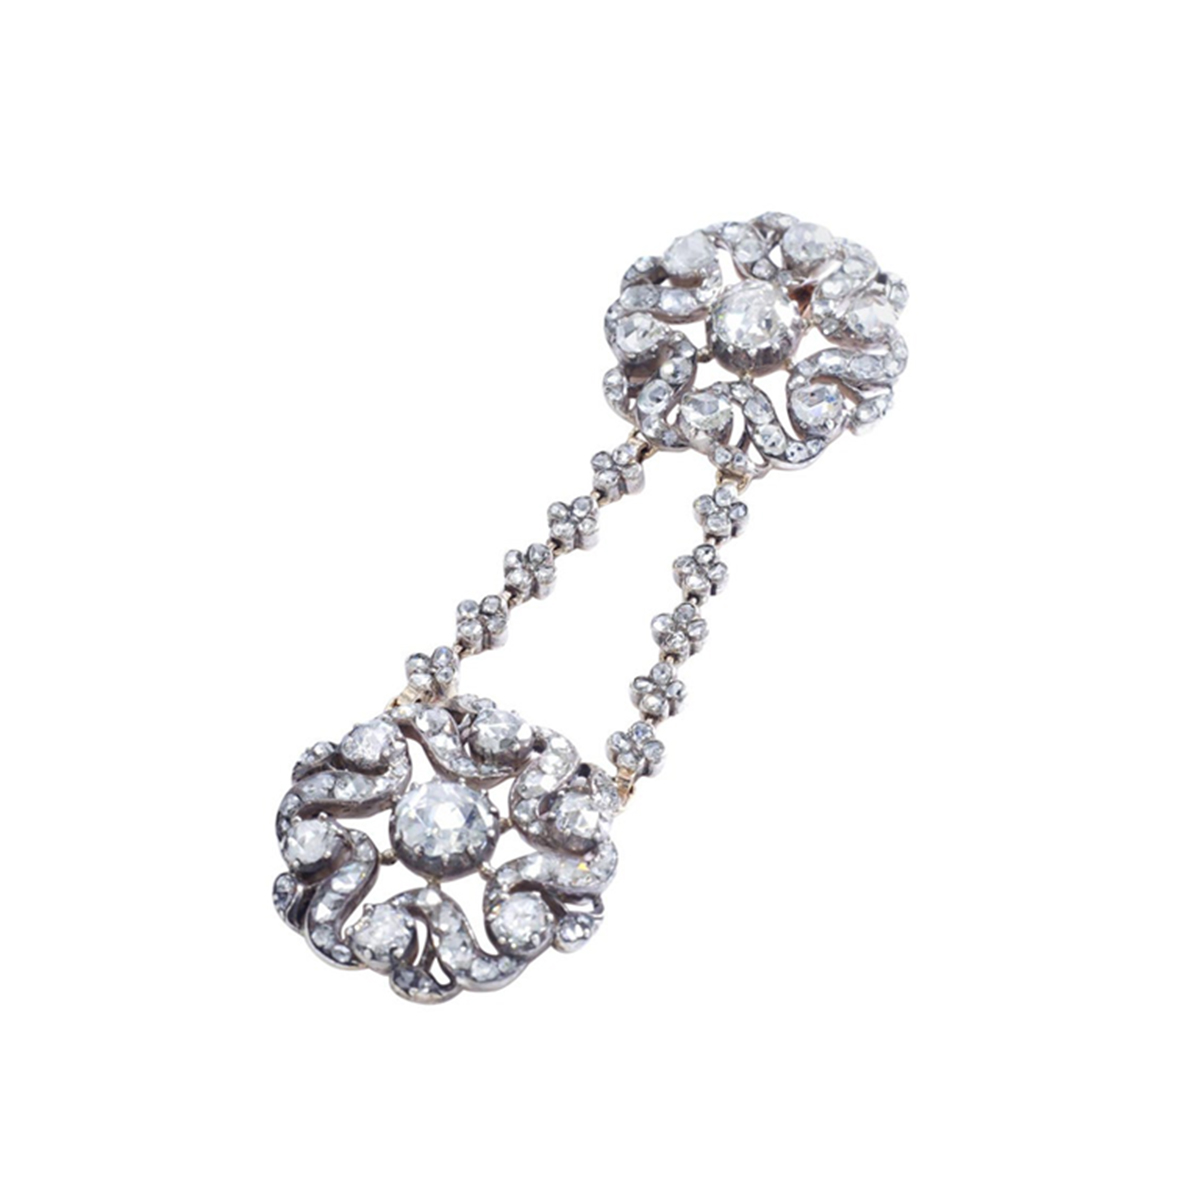 Antique-rose-cut-diamond-gold-pendant-necklace